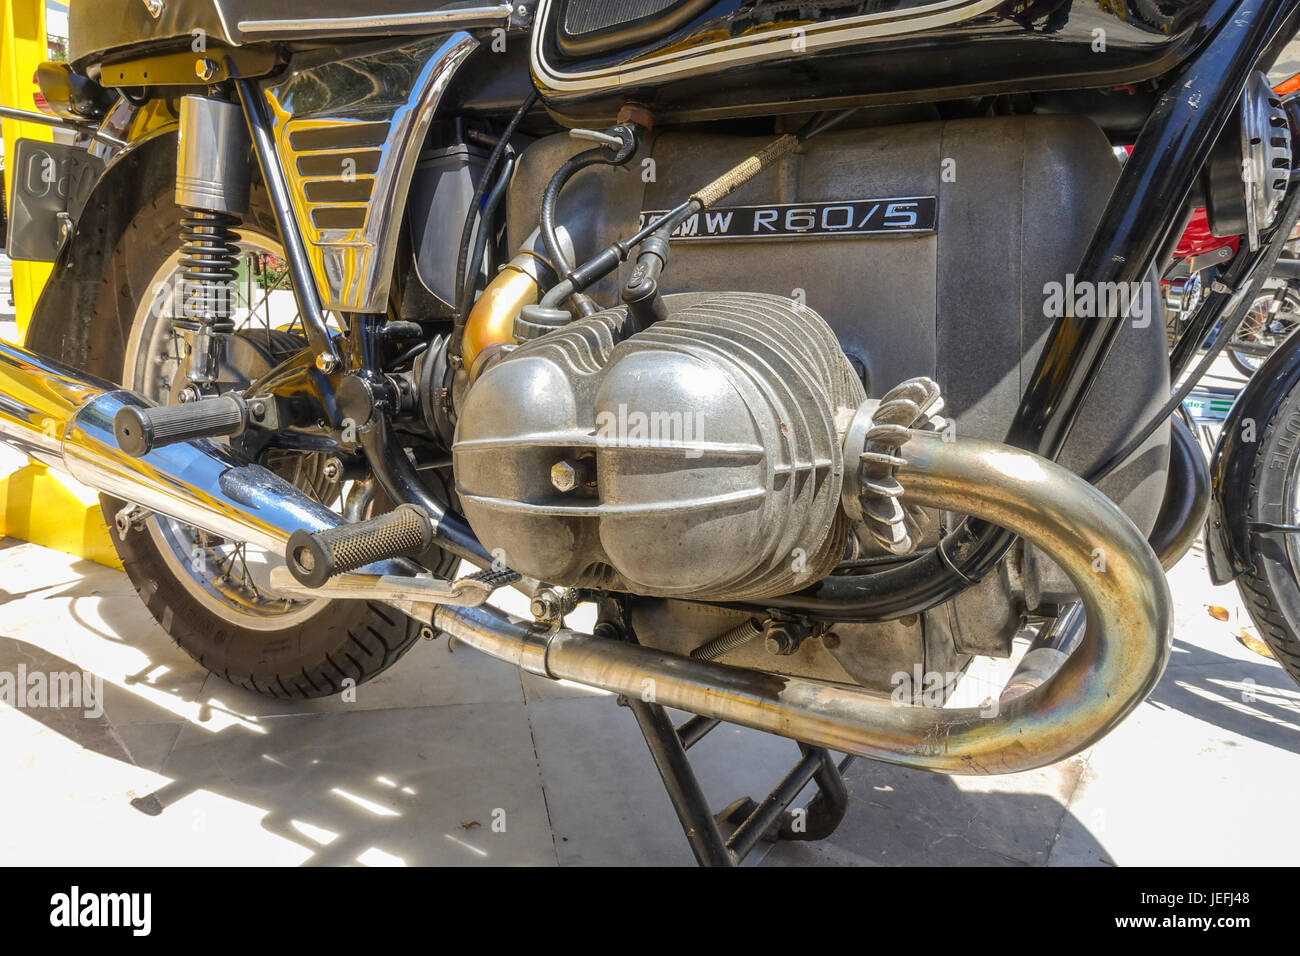 Bloc moteur de BMW R60, classic bike sur l'affichage à une moto classique rencontre à Mijas, Andalousie, espagne. Banque D'Images